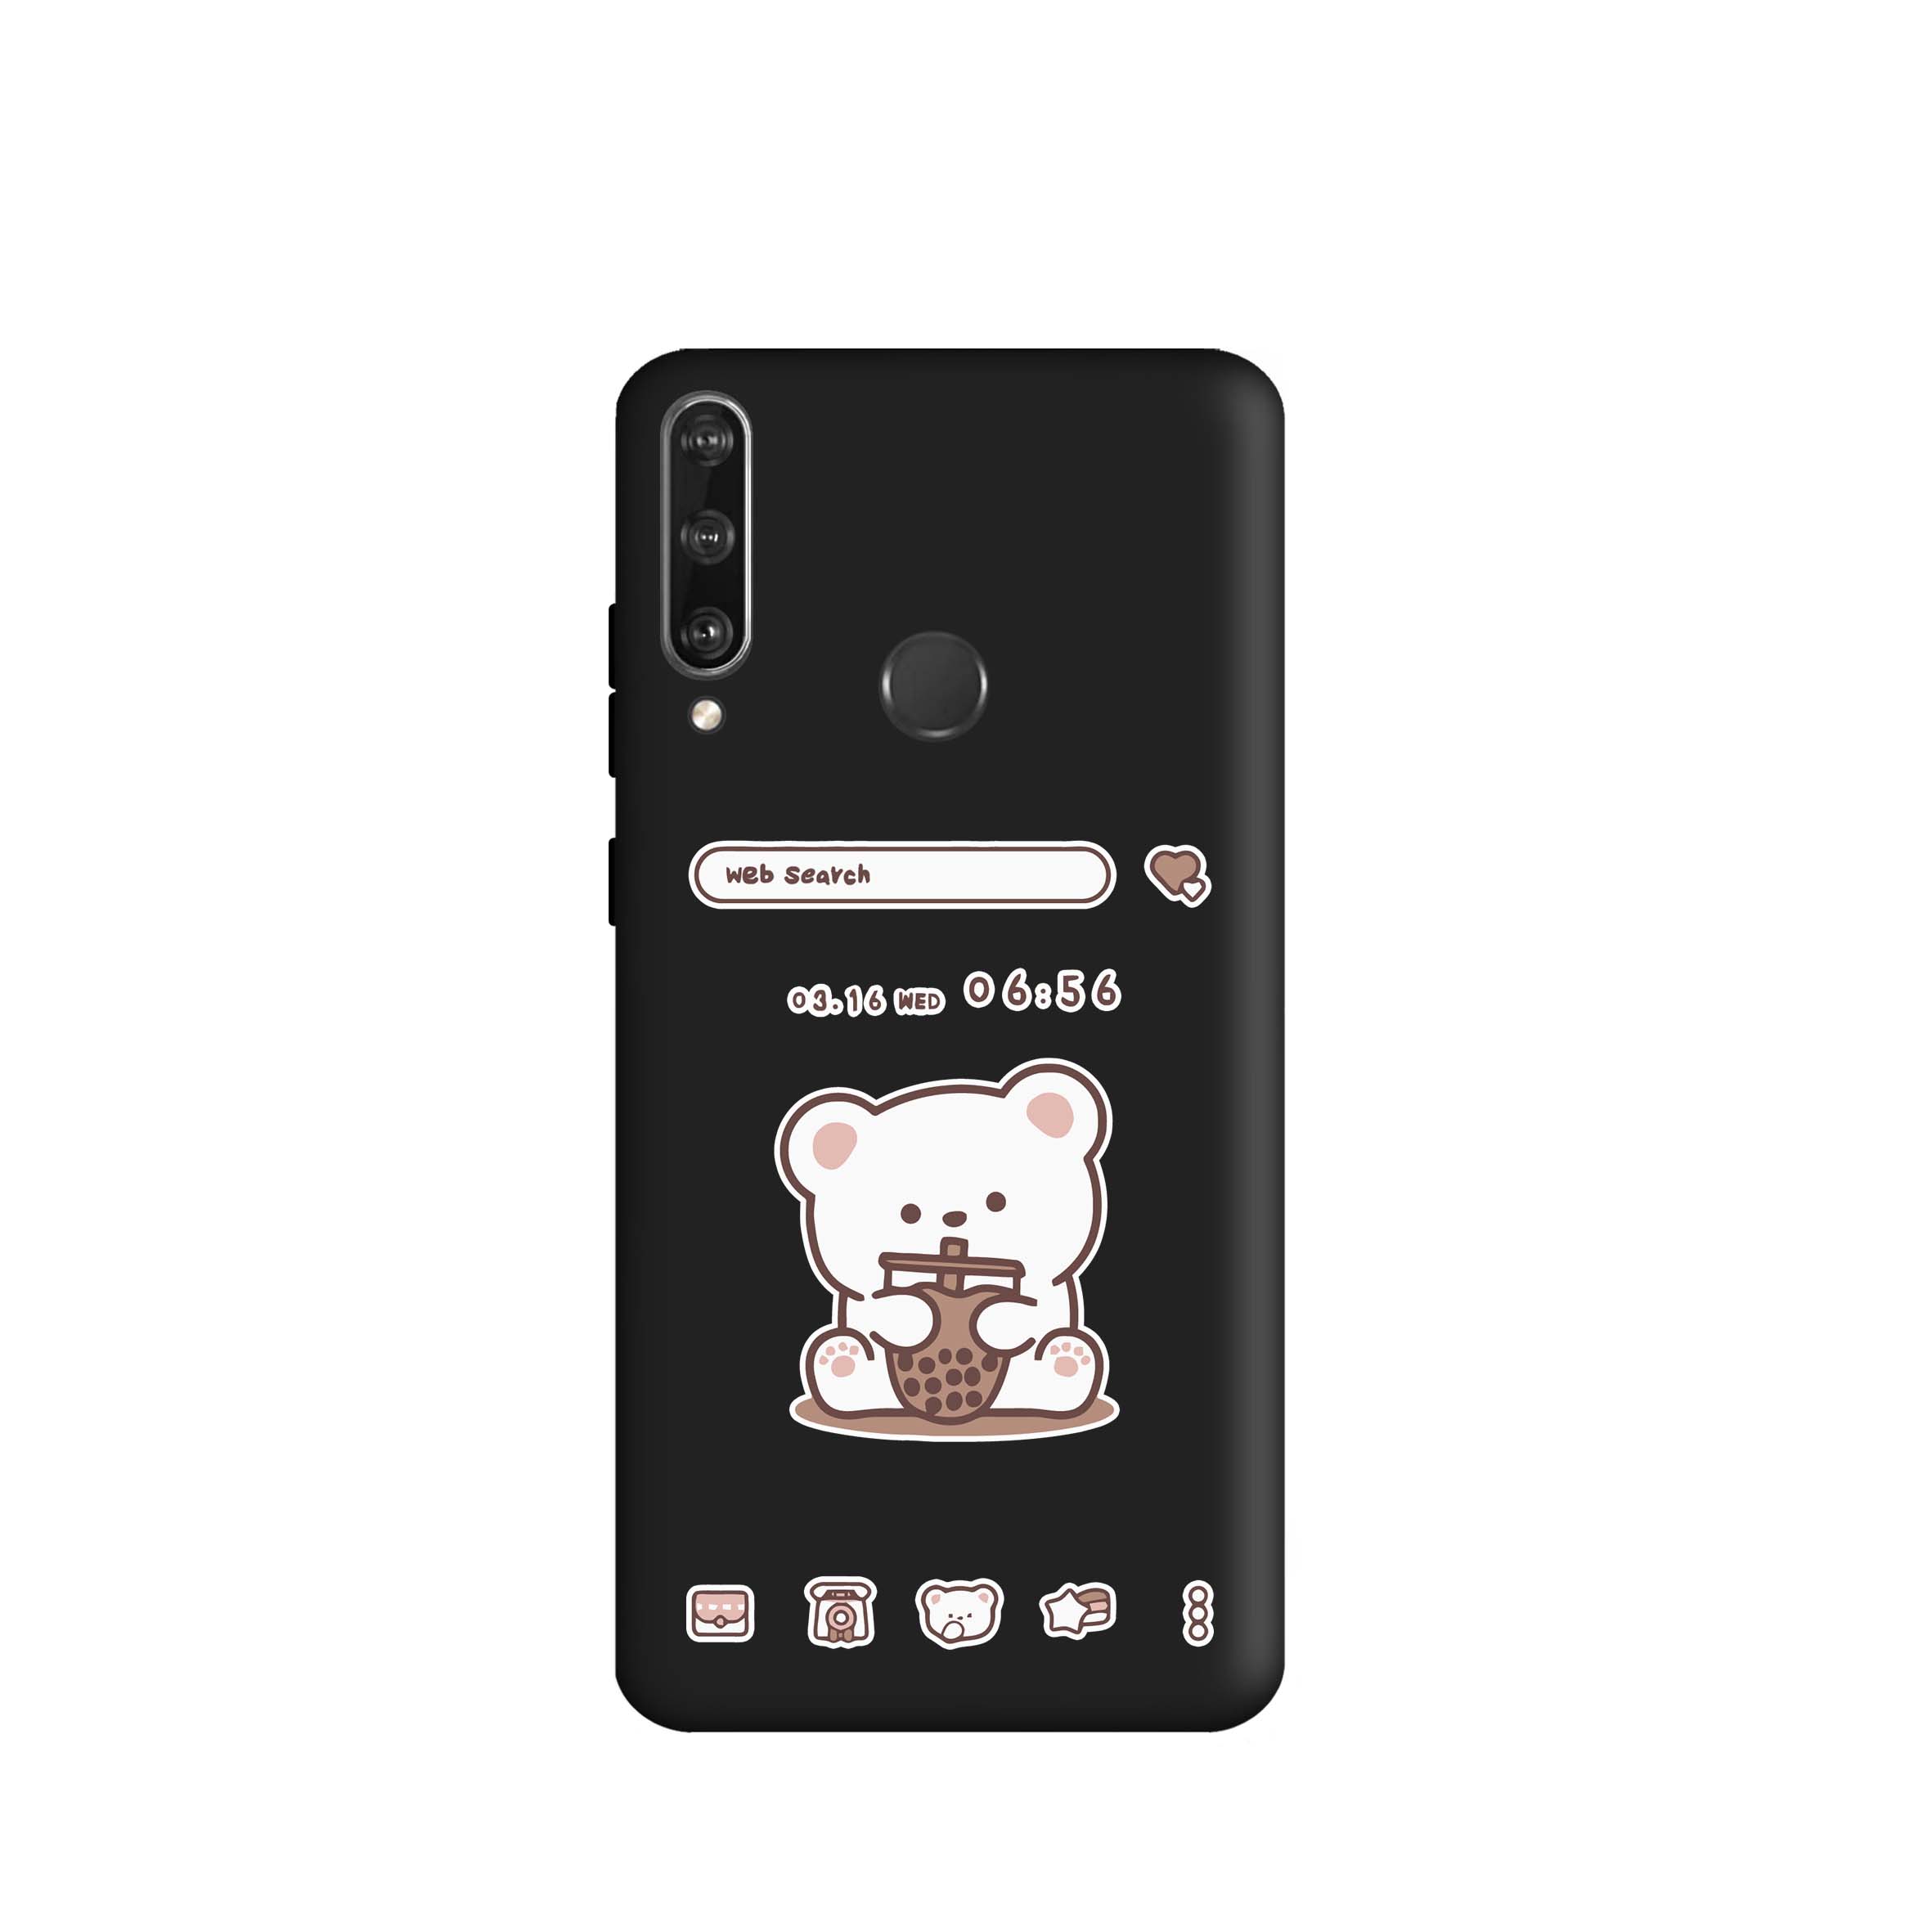 کاور طرح خرس اسموتی کد m3606 مناسب برای گوشی موبایل هوآوی Y6 P